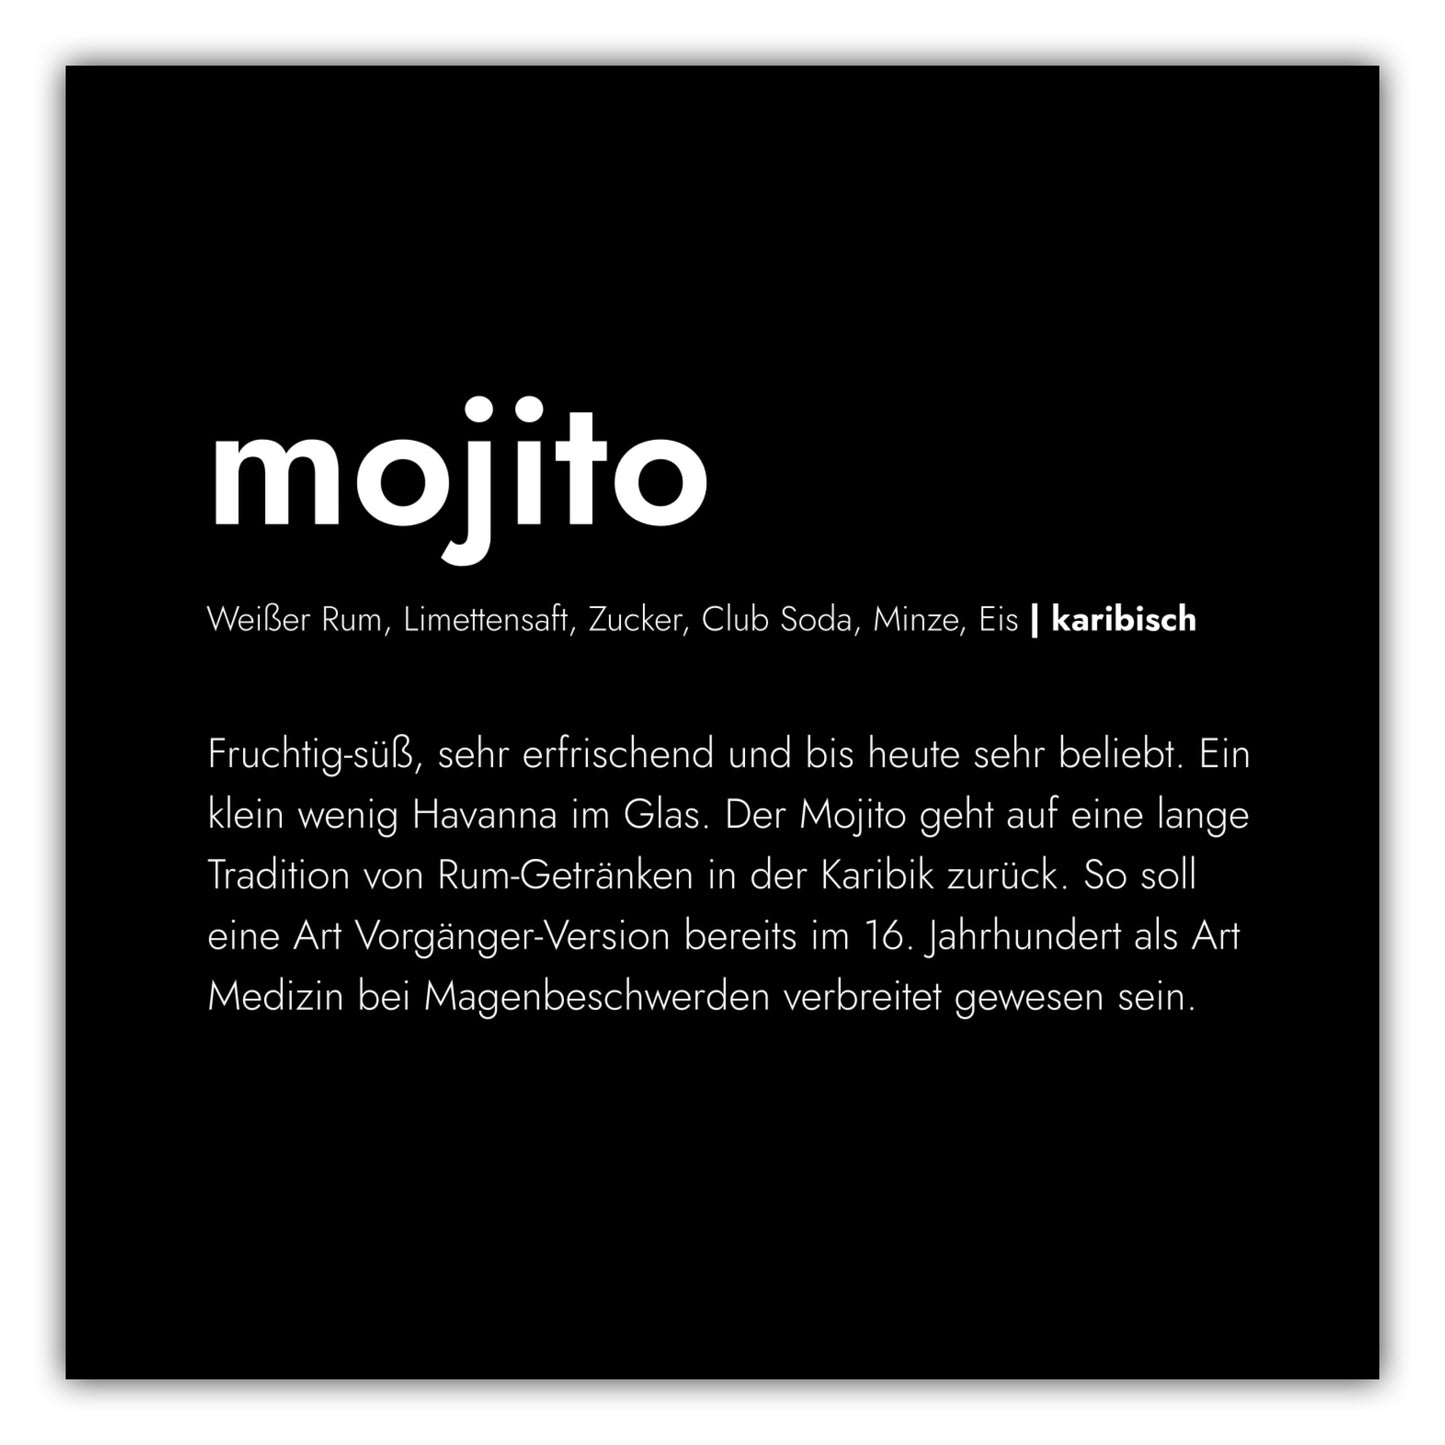 Poster Mojito - Definition